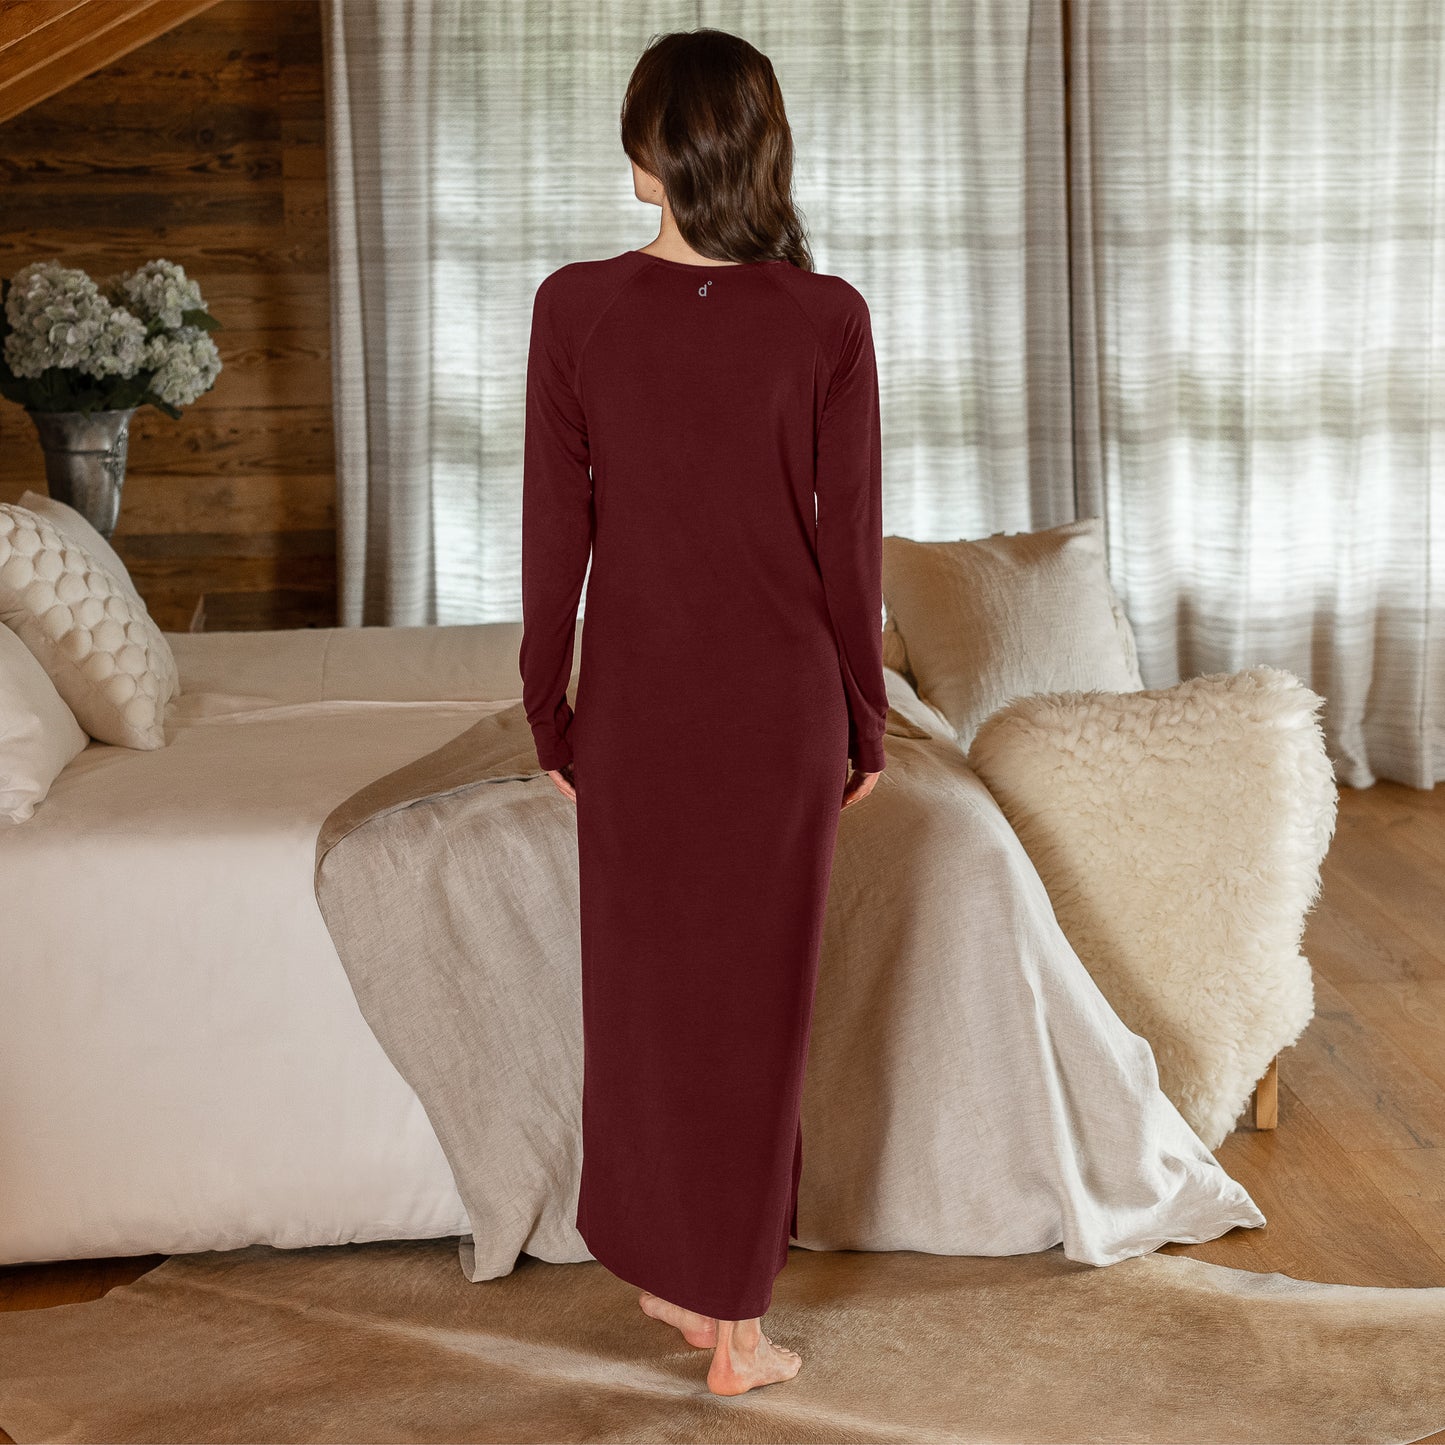 Merino nightgown || Deep burgundy